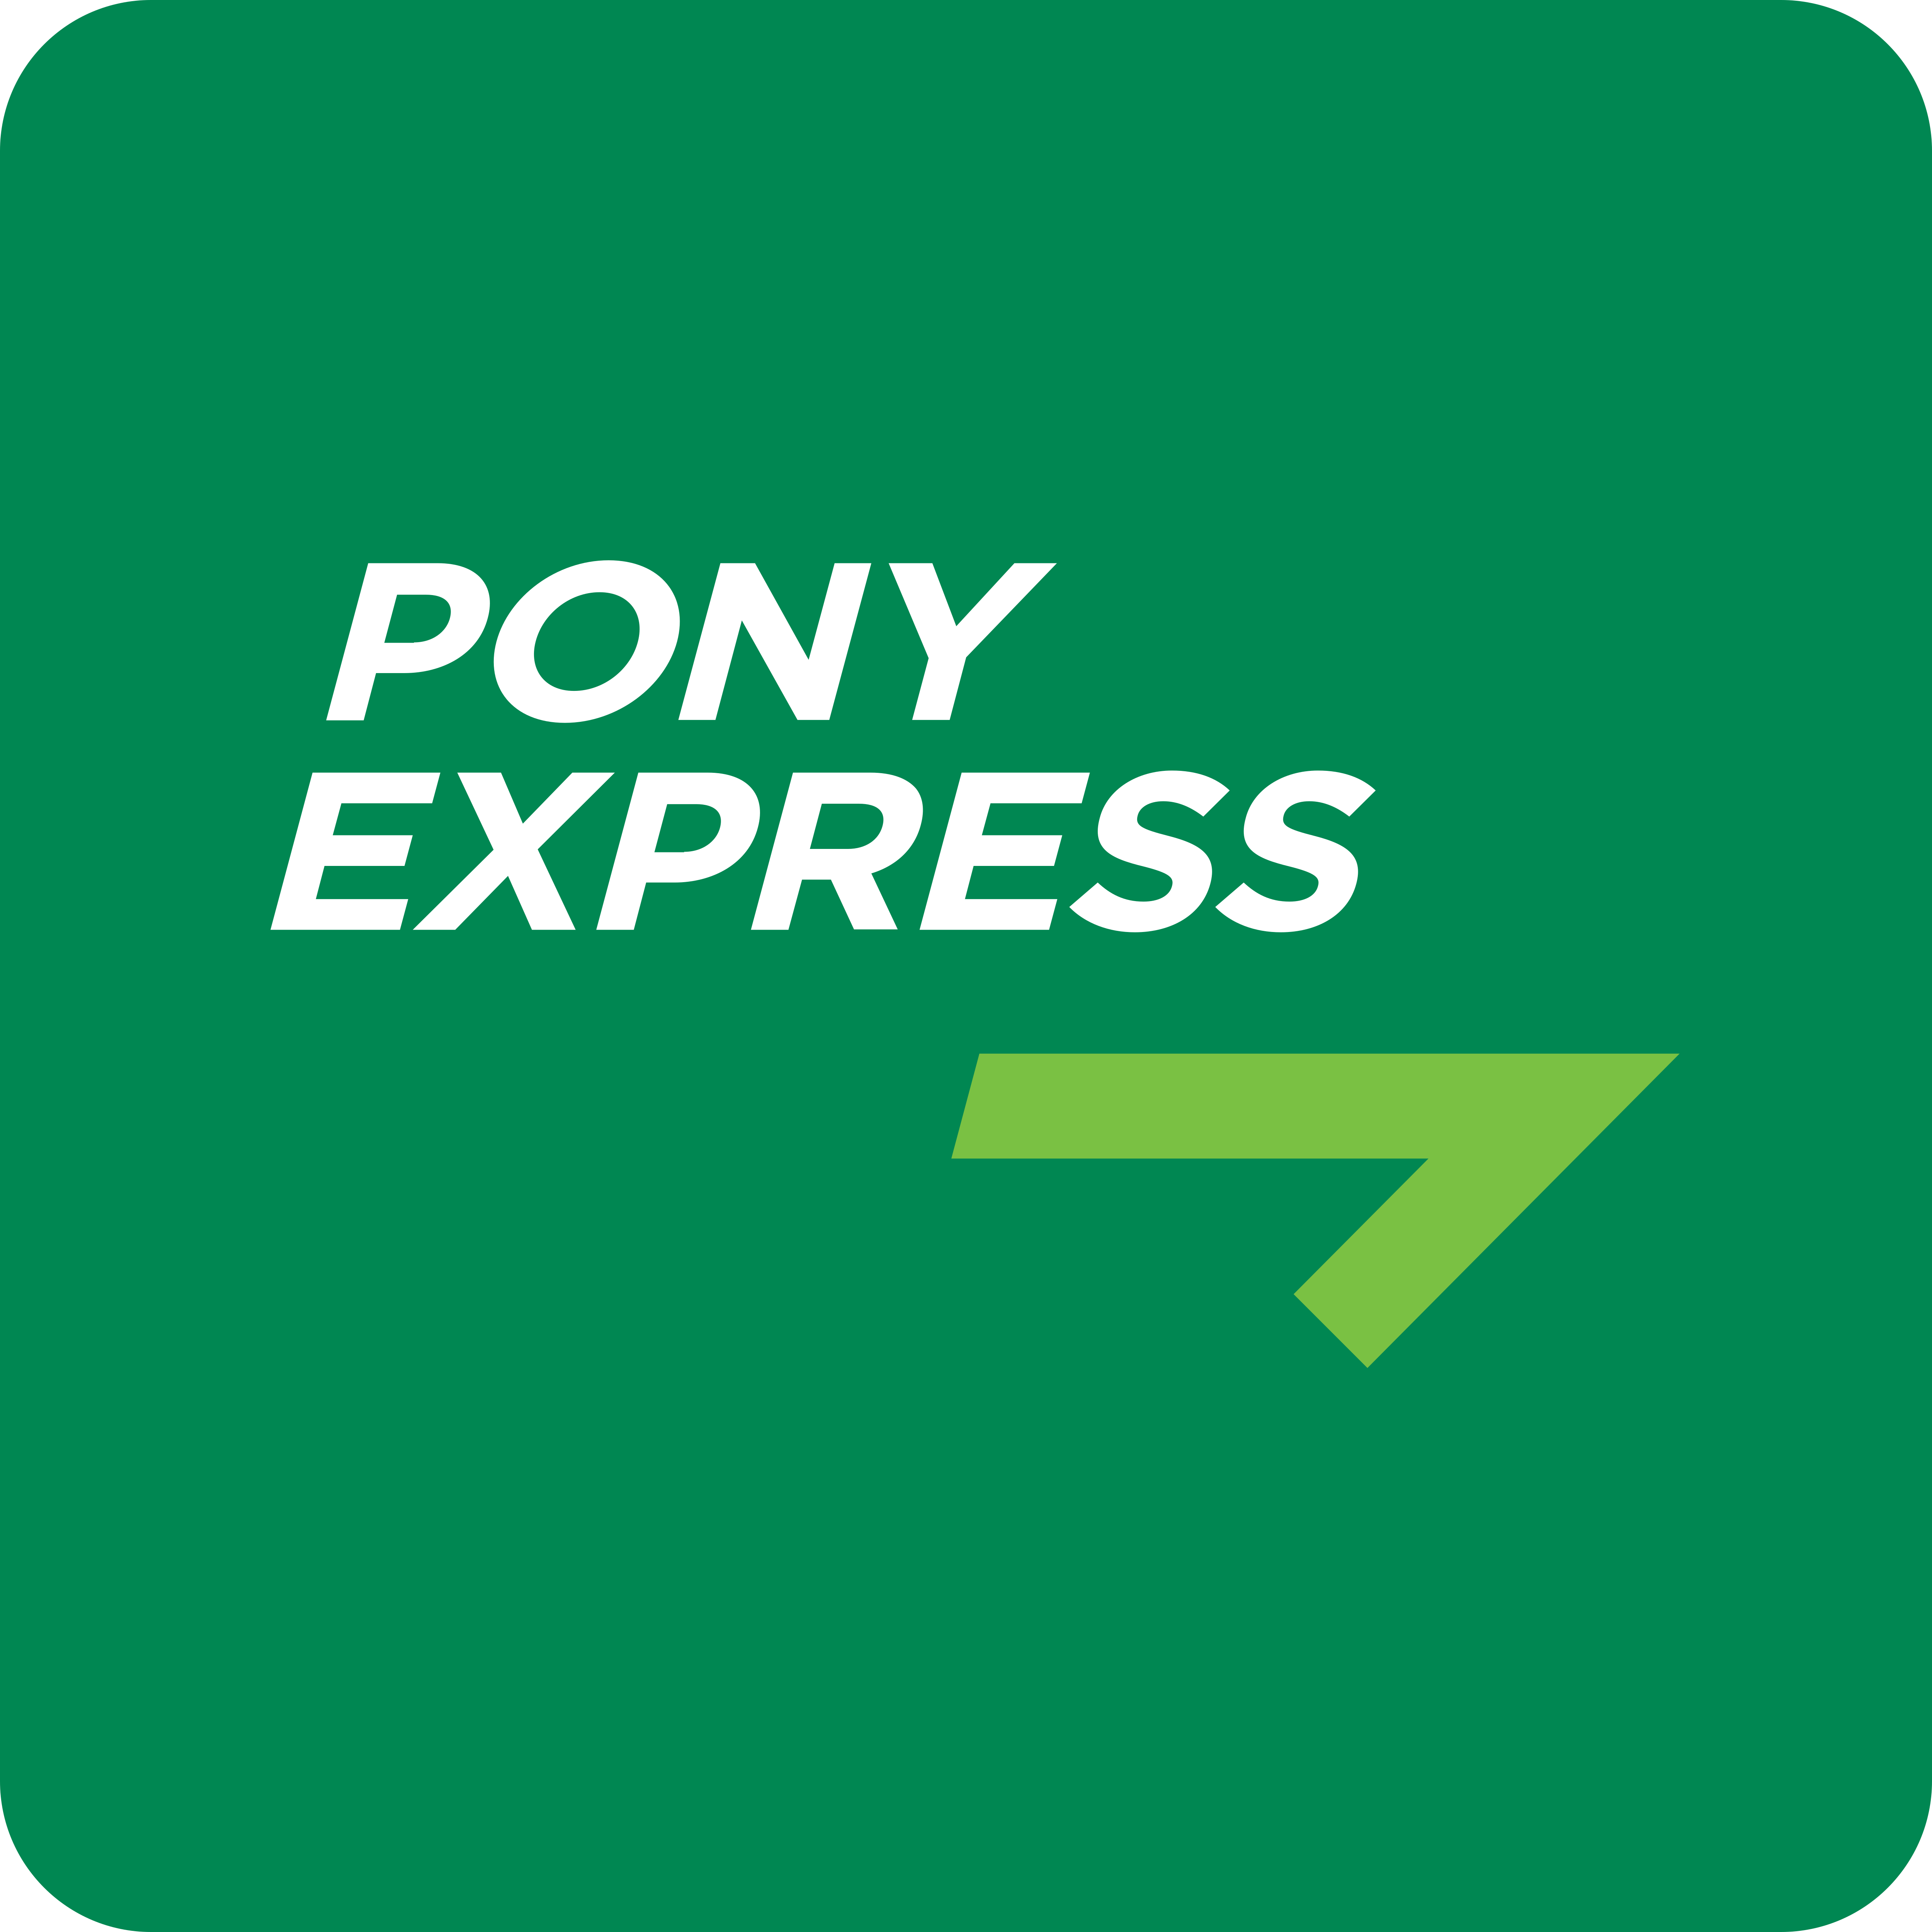 Пони экспресс. Pony Express логотип. Пони экспресс иконка. Курьерская служба пони экспресс. Компания pony